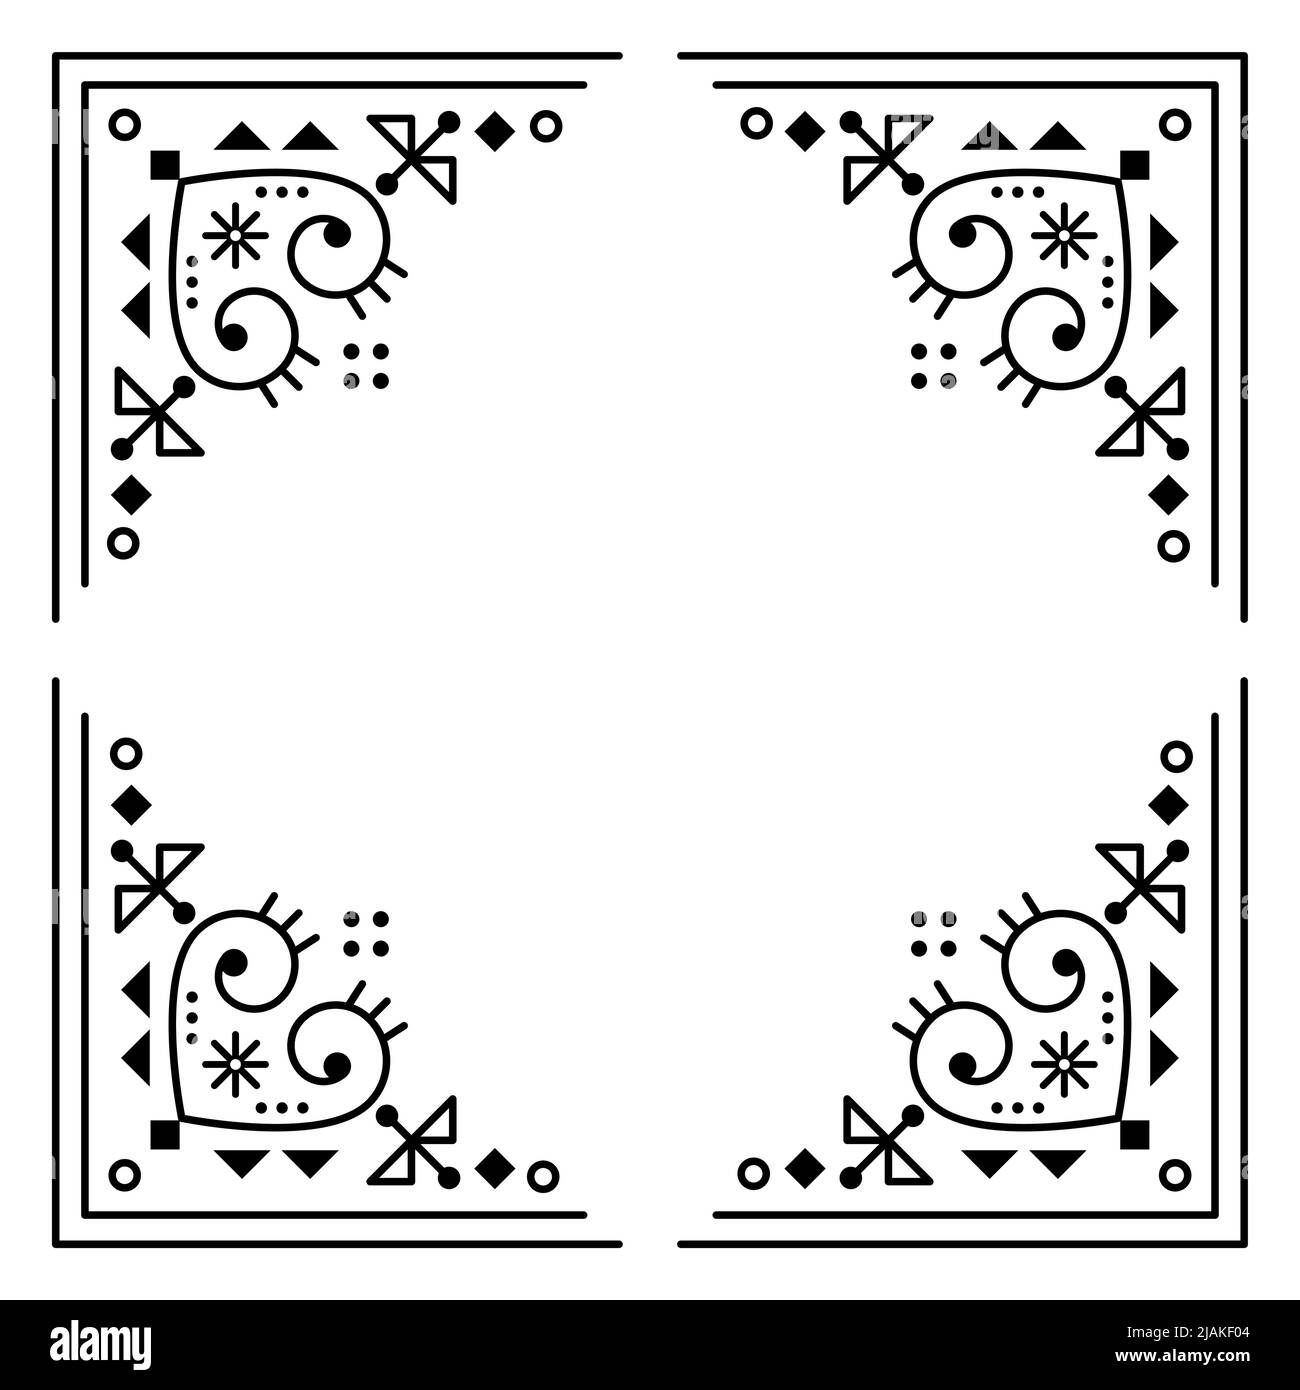 Carte de voeux ou motif d'invitation à motif vectoriel de style art folklorique de la piste islandaise avec coins encadrés, composition géométrique carrée avec coeurs Illustration de Vecteur